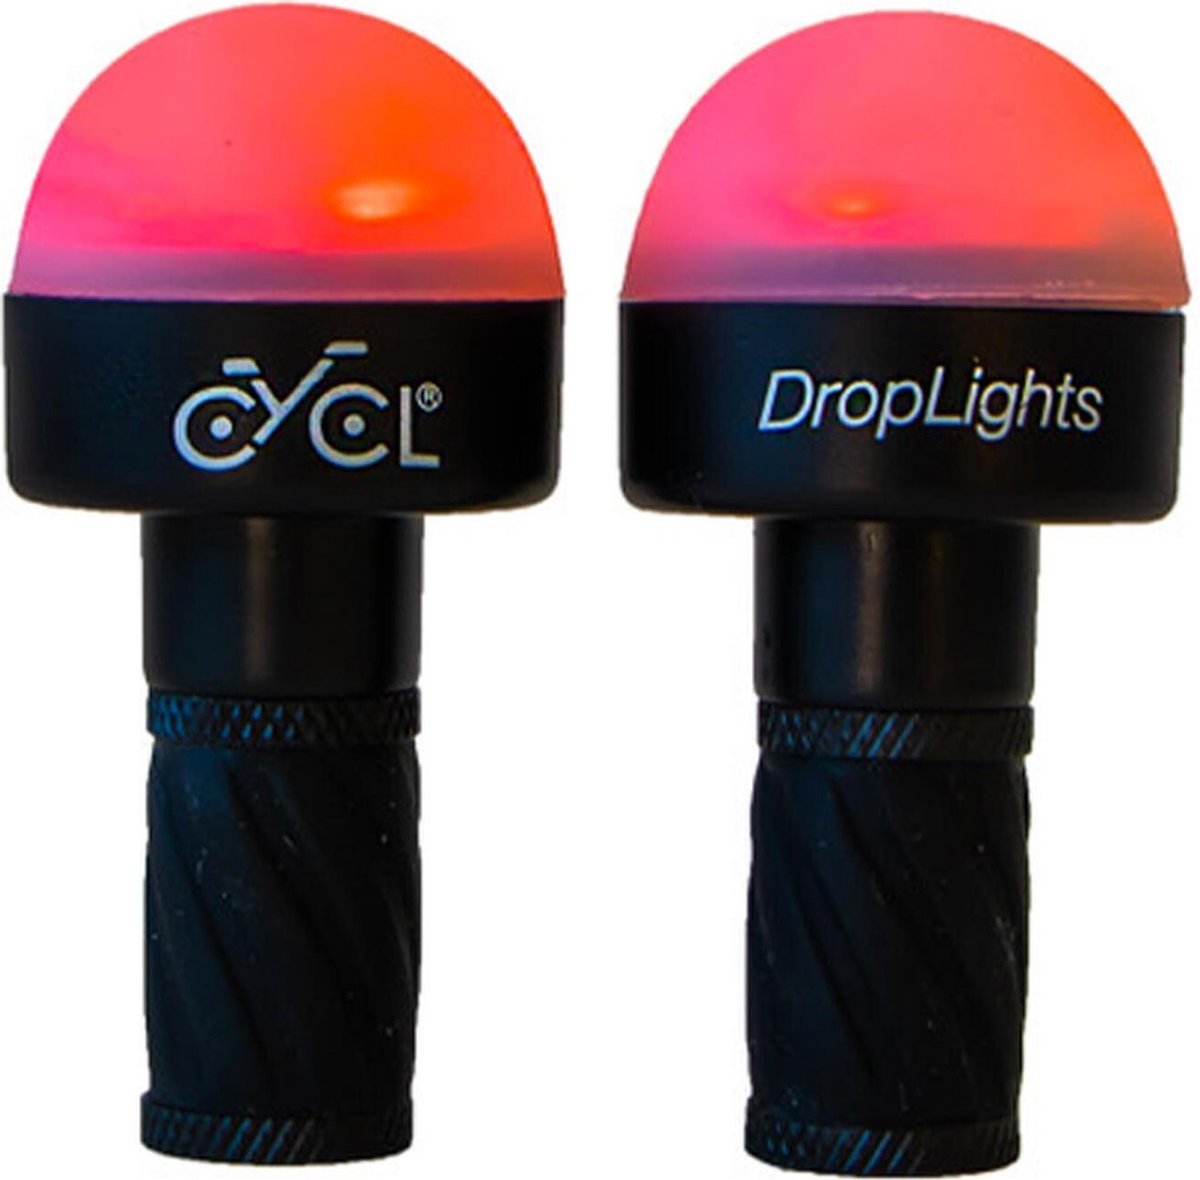 CYCL stuurverlichting DropLights 6 cm/rood 2 stuks - Zwart